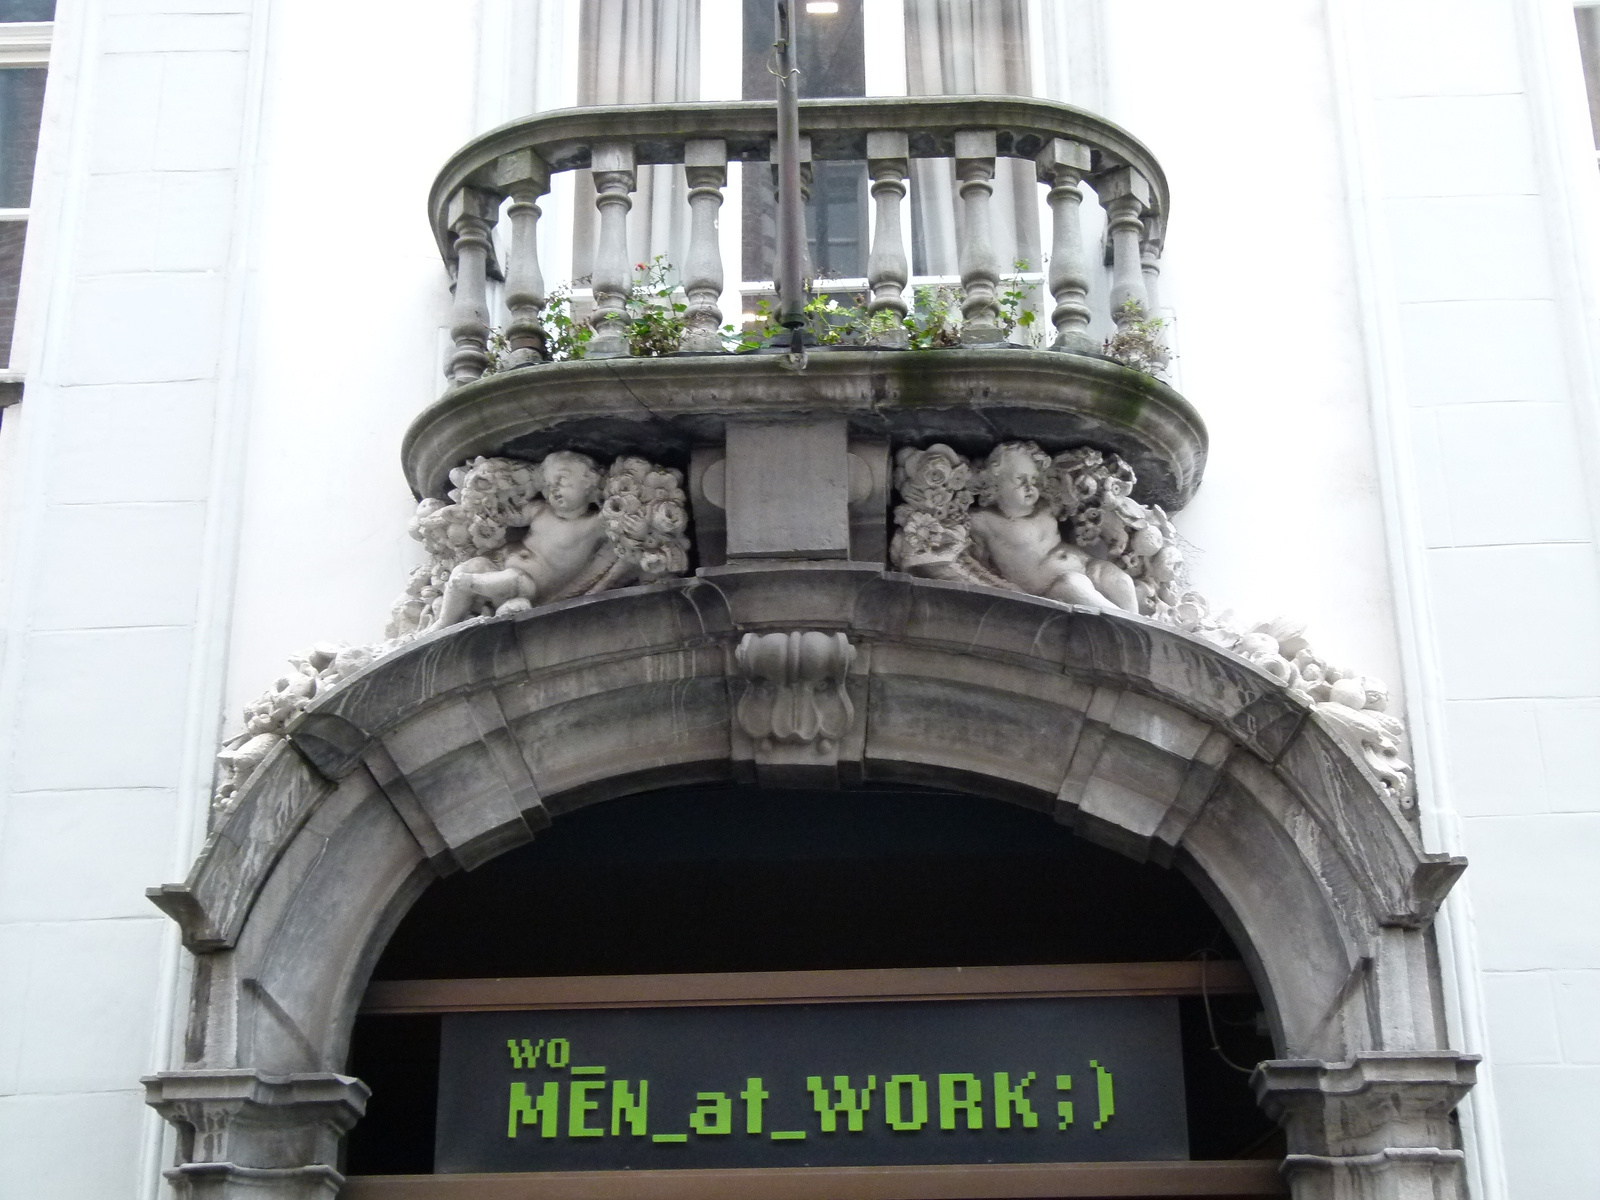 Brugge - wo men at work;) (P1280593)